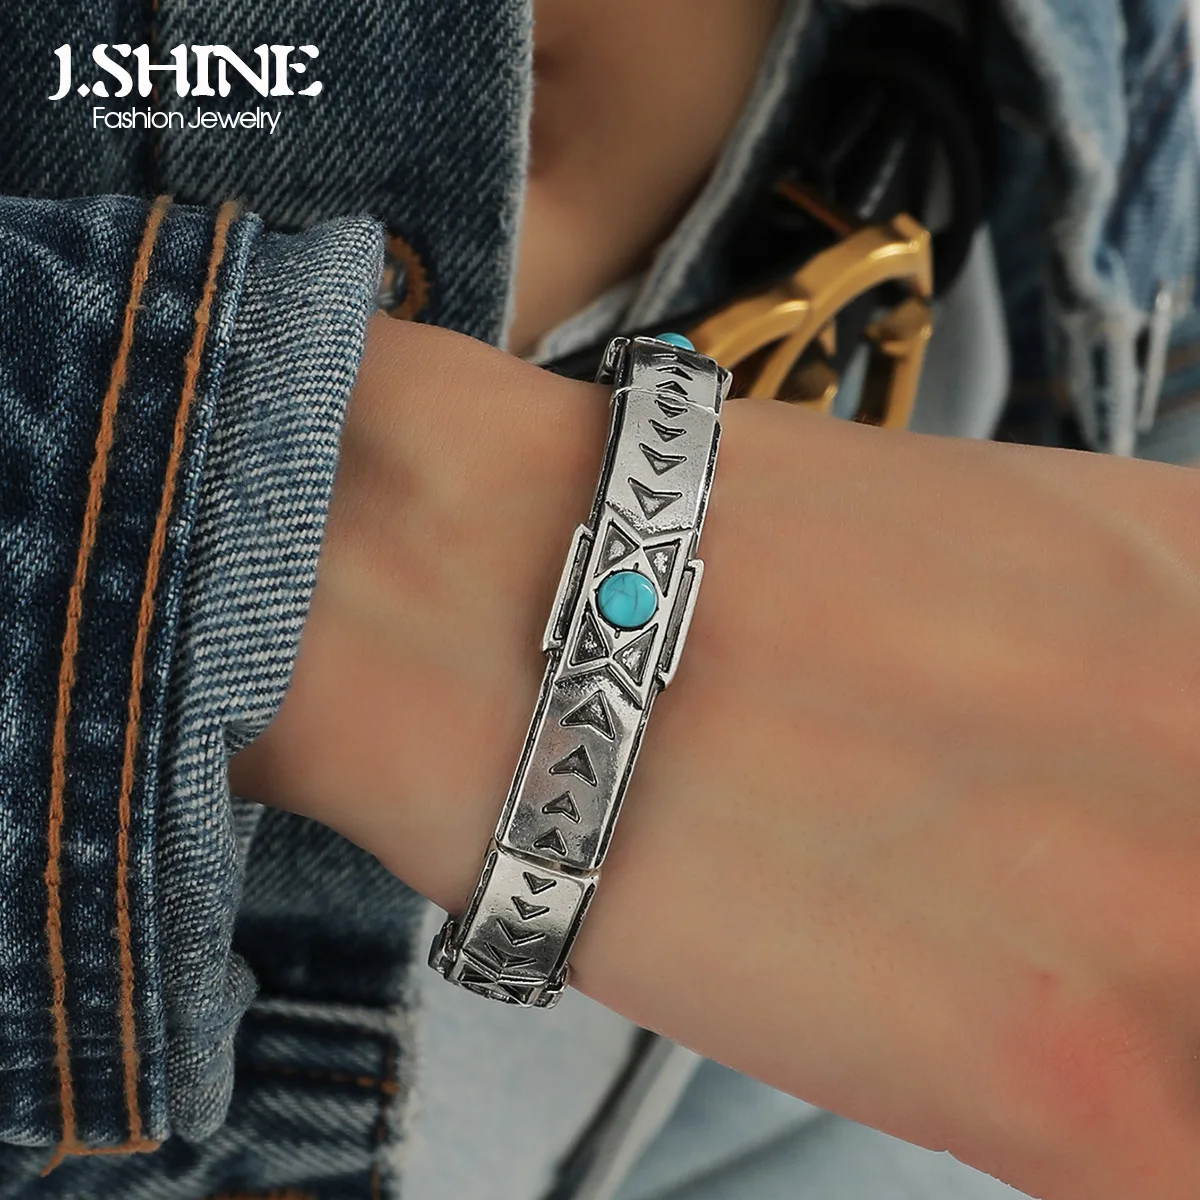 J.Shine Открытые браслеты в этническом стиле бохо, синтетический камень, Геометрические узоры, Ретро-серебристый цвет, металлические украшения ручной работы.